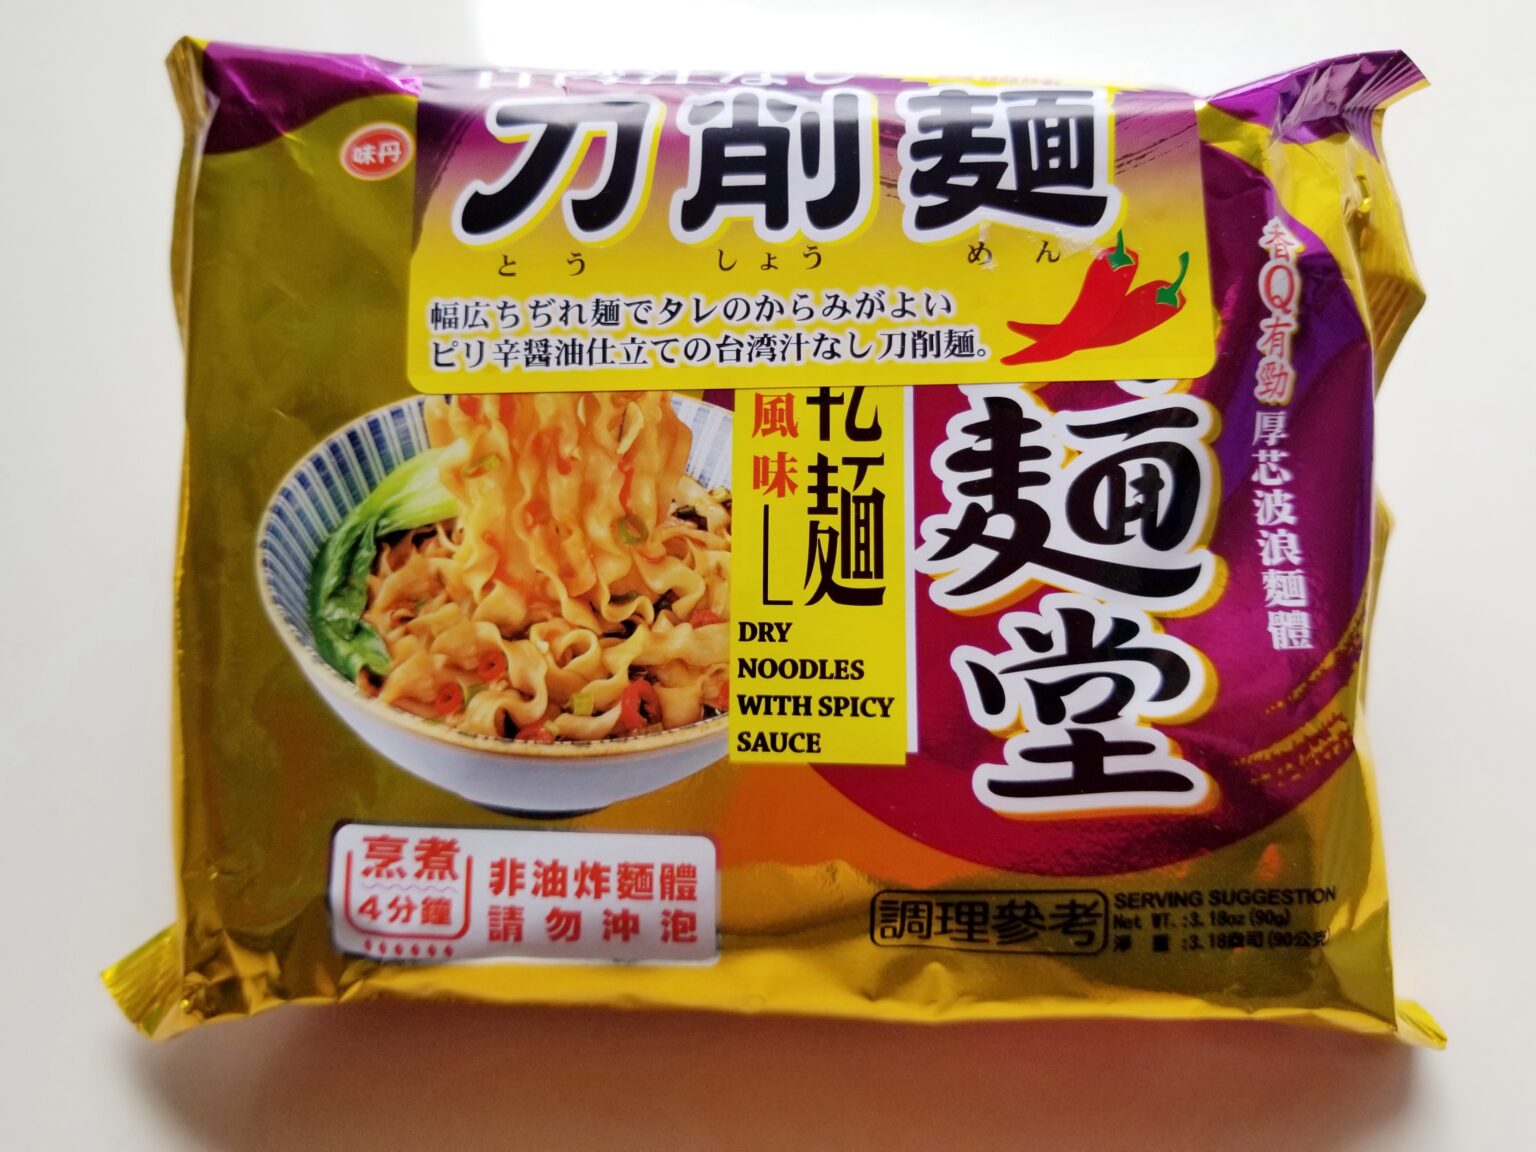 インスタント袋刀削麺「真麺堂 台湾汁なし刀削麺」 実食レポート